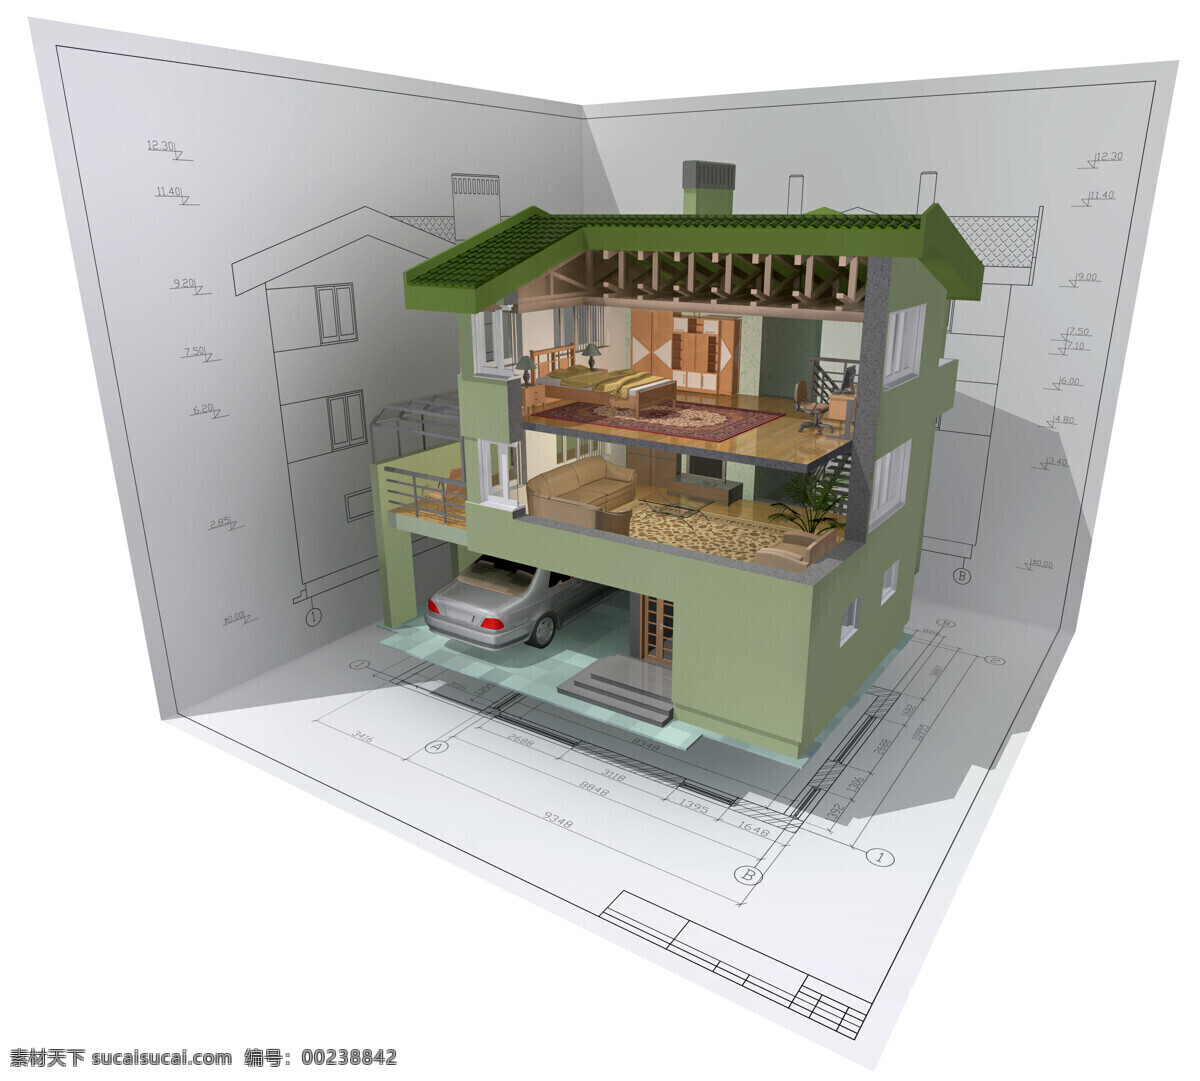 绿色别墅构型 绿色 别墅 构型 楼房 房子 建筑 模型 图纸 设计图 建筑设计 环境家居 白色